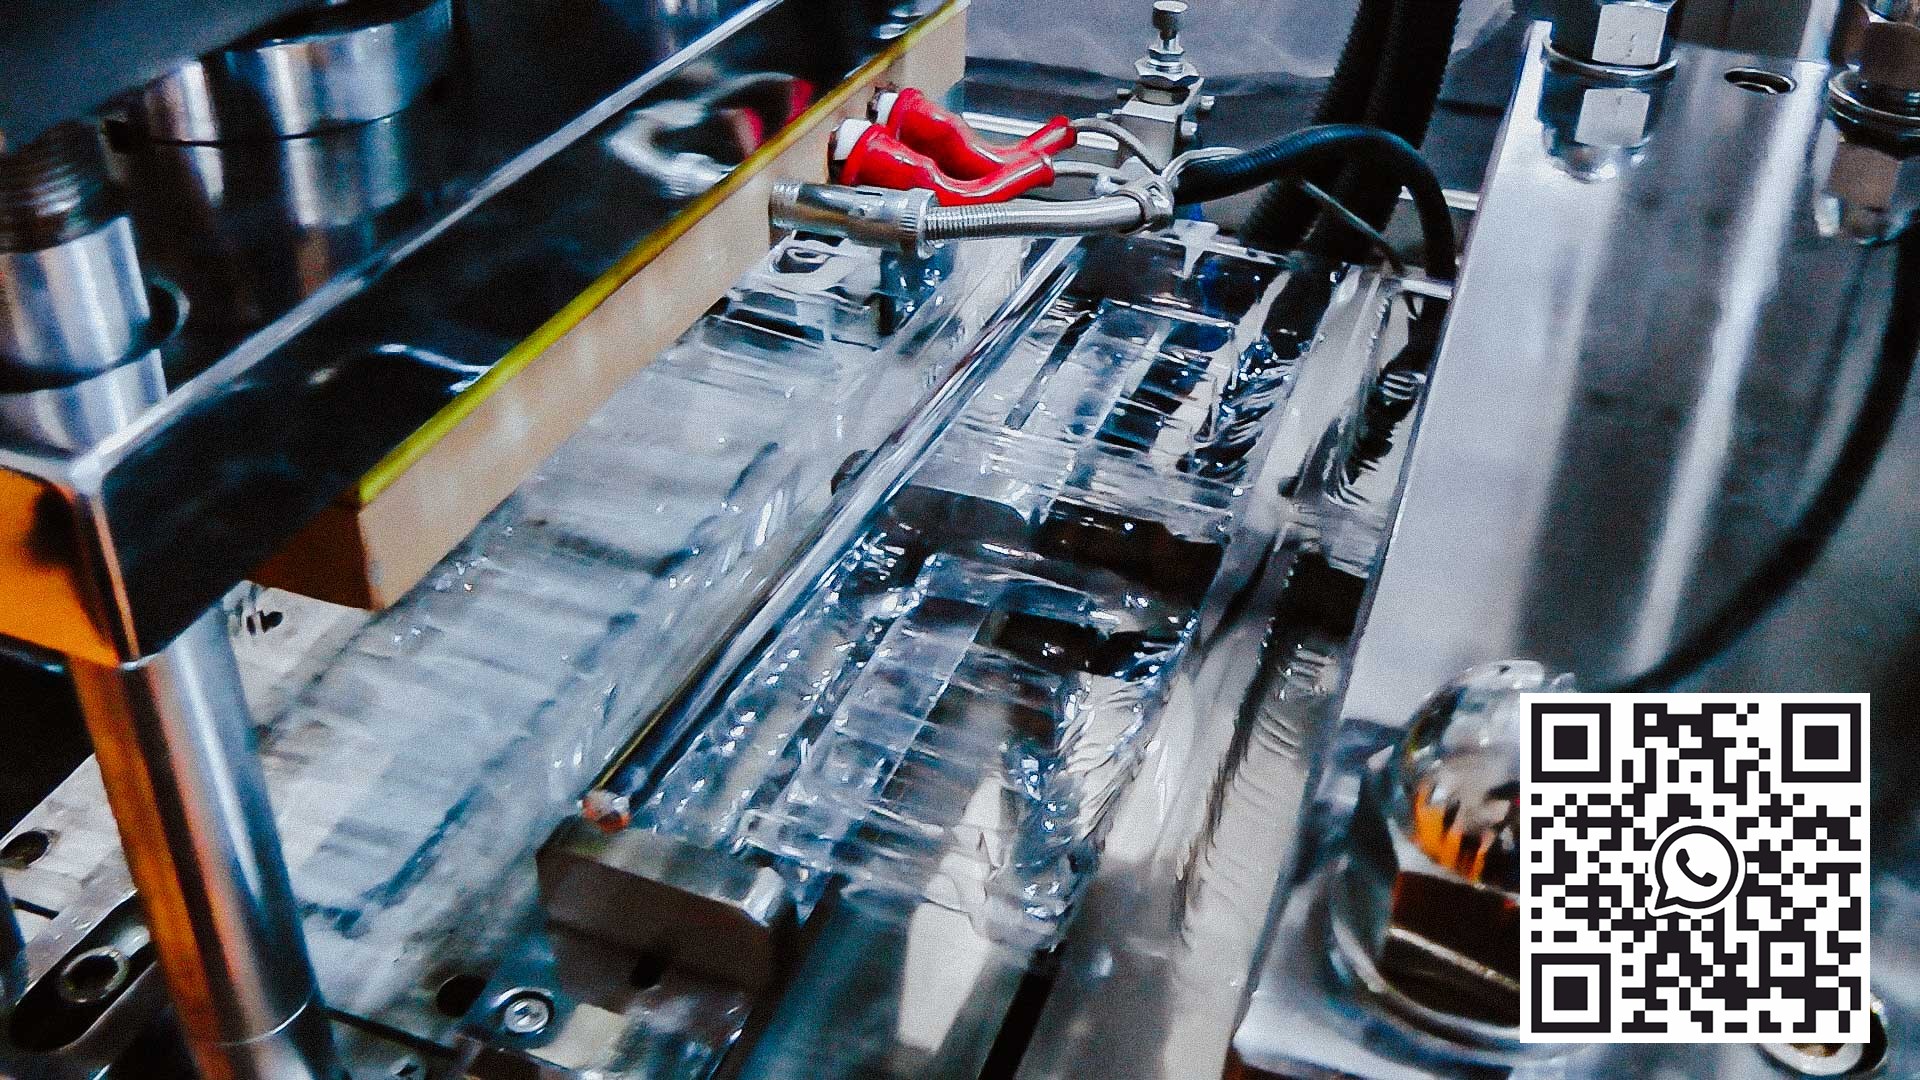 Automat do produkcji tacek narzędziowych typu corex blister na ampułki i fiolki